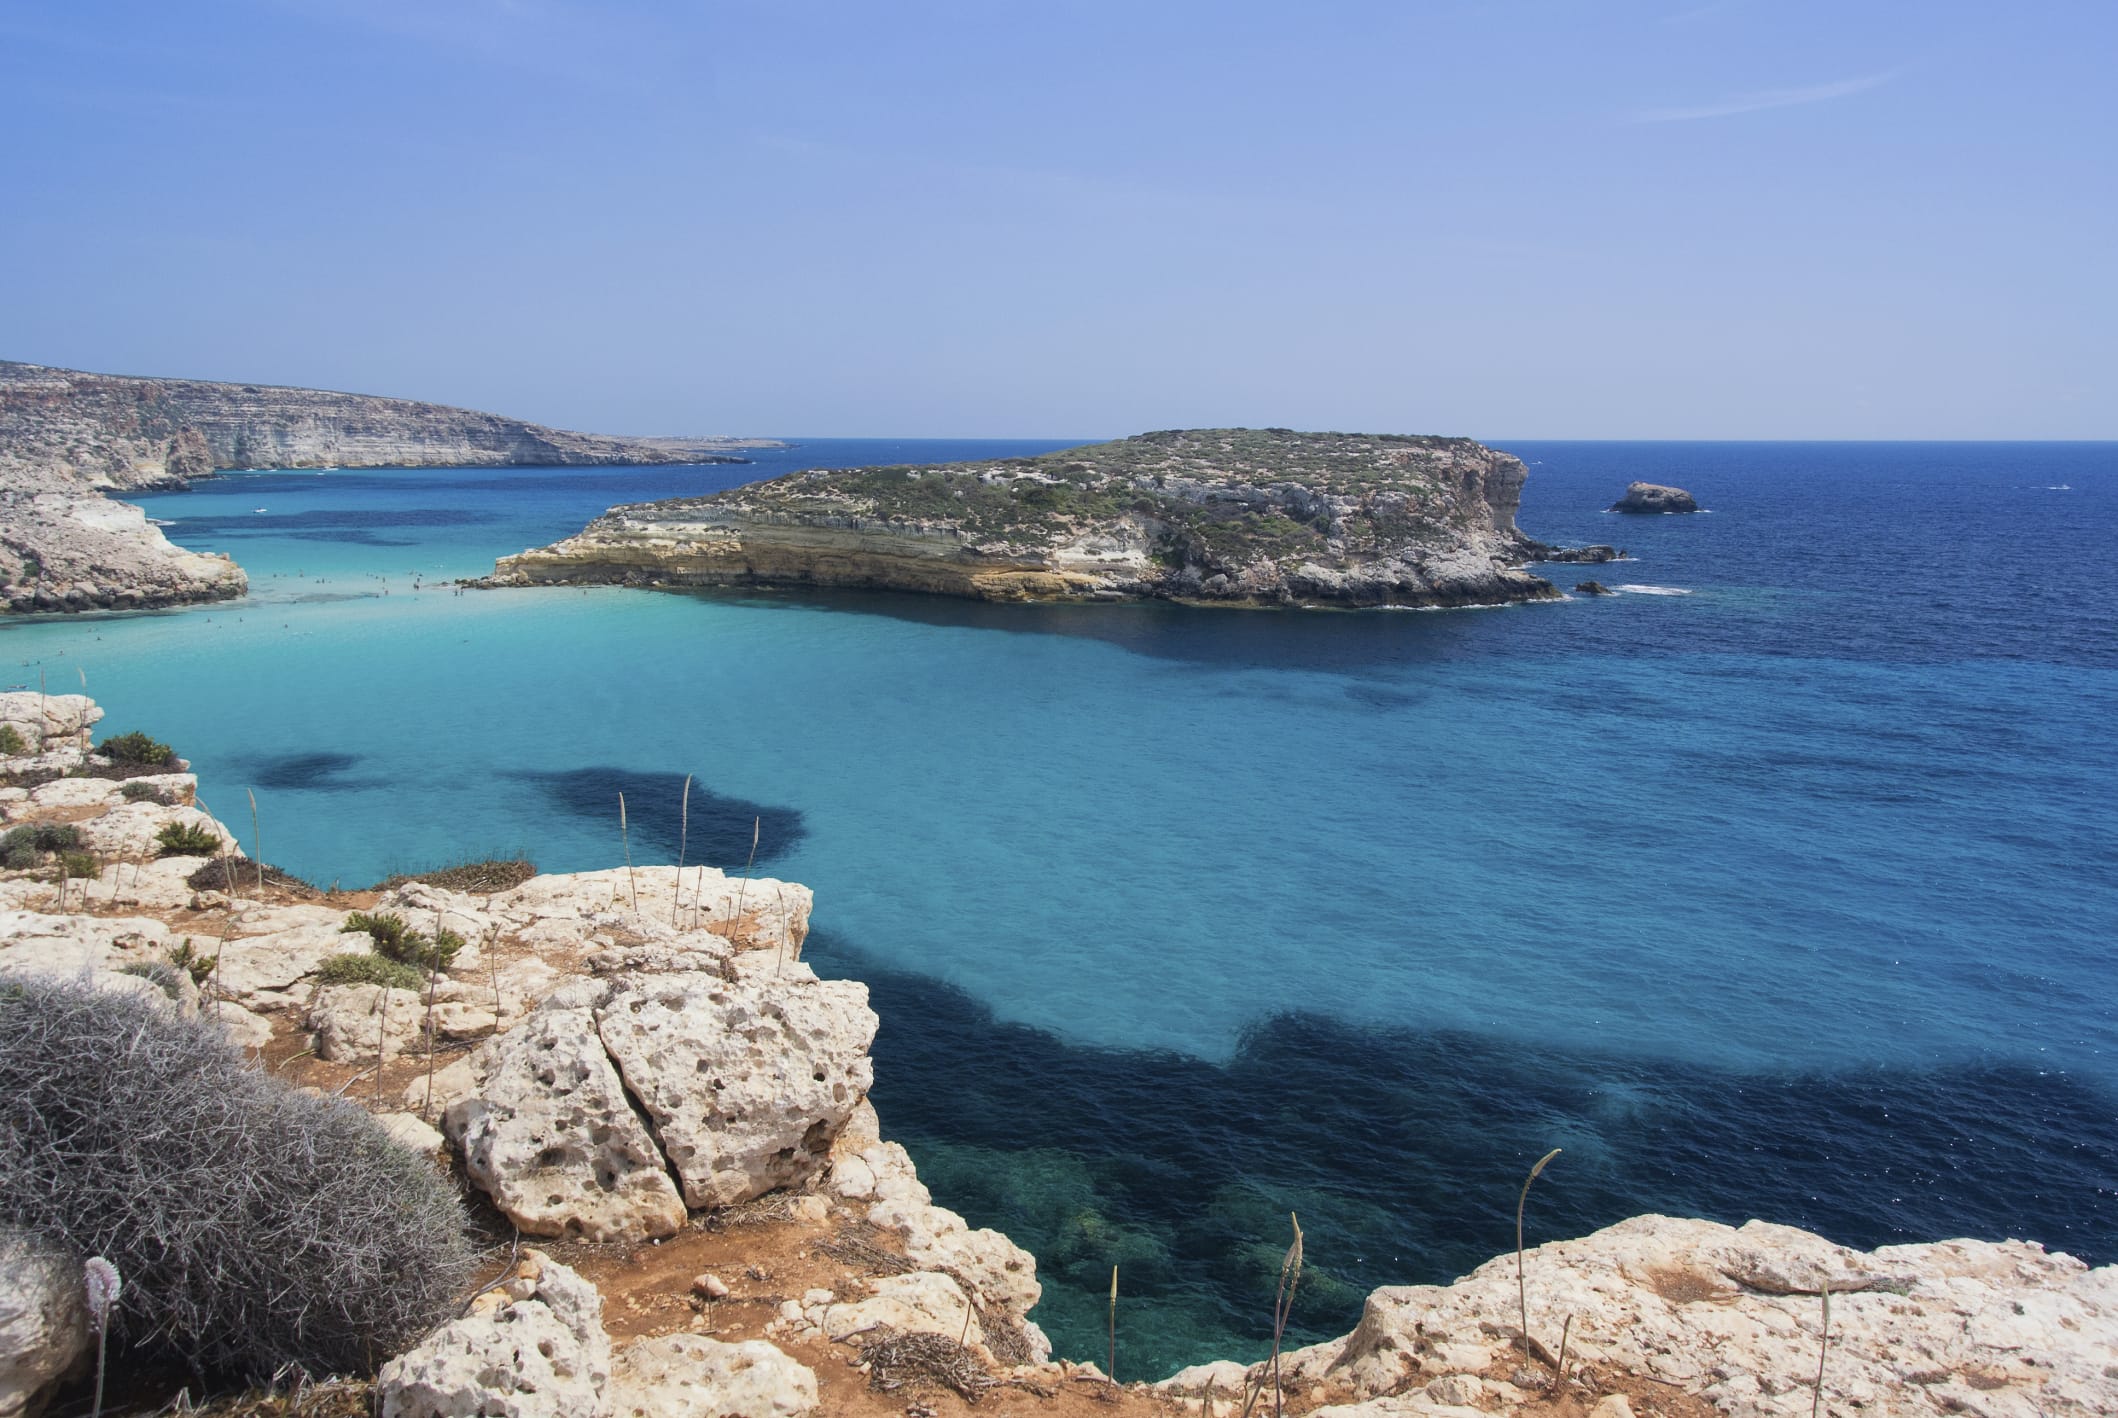 Recupero rifiuti pericolosi: l'isola ecologica del porto di Lampedusa